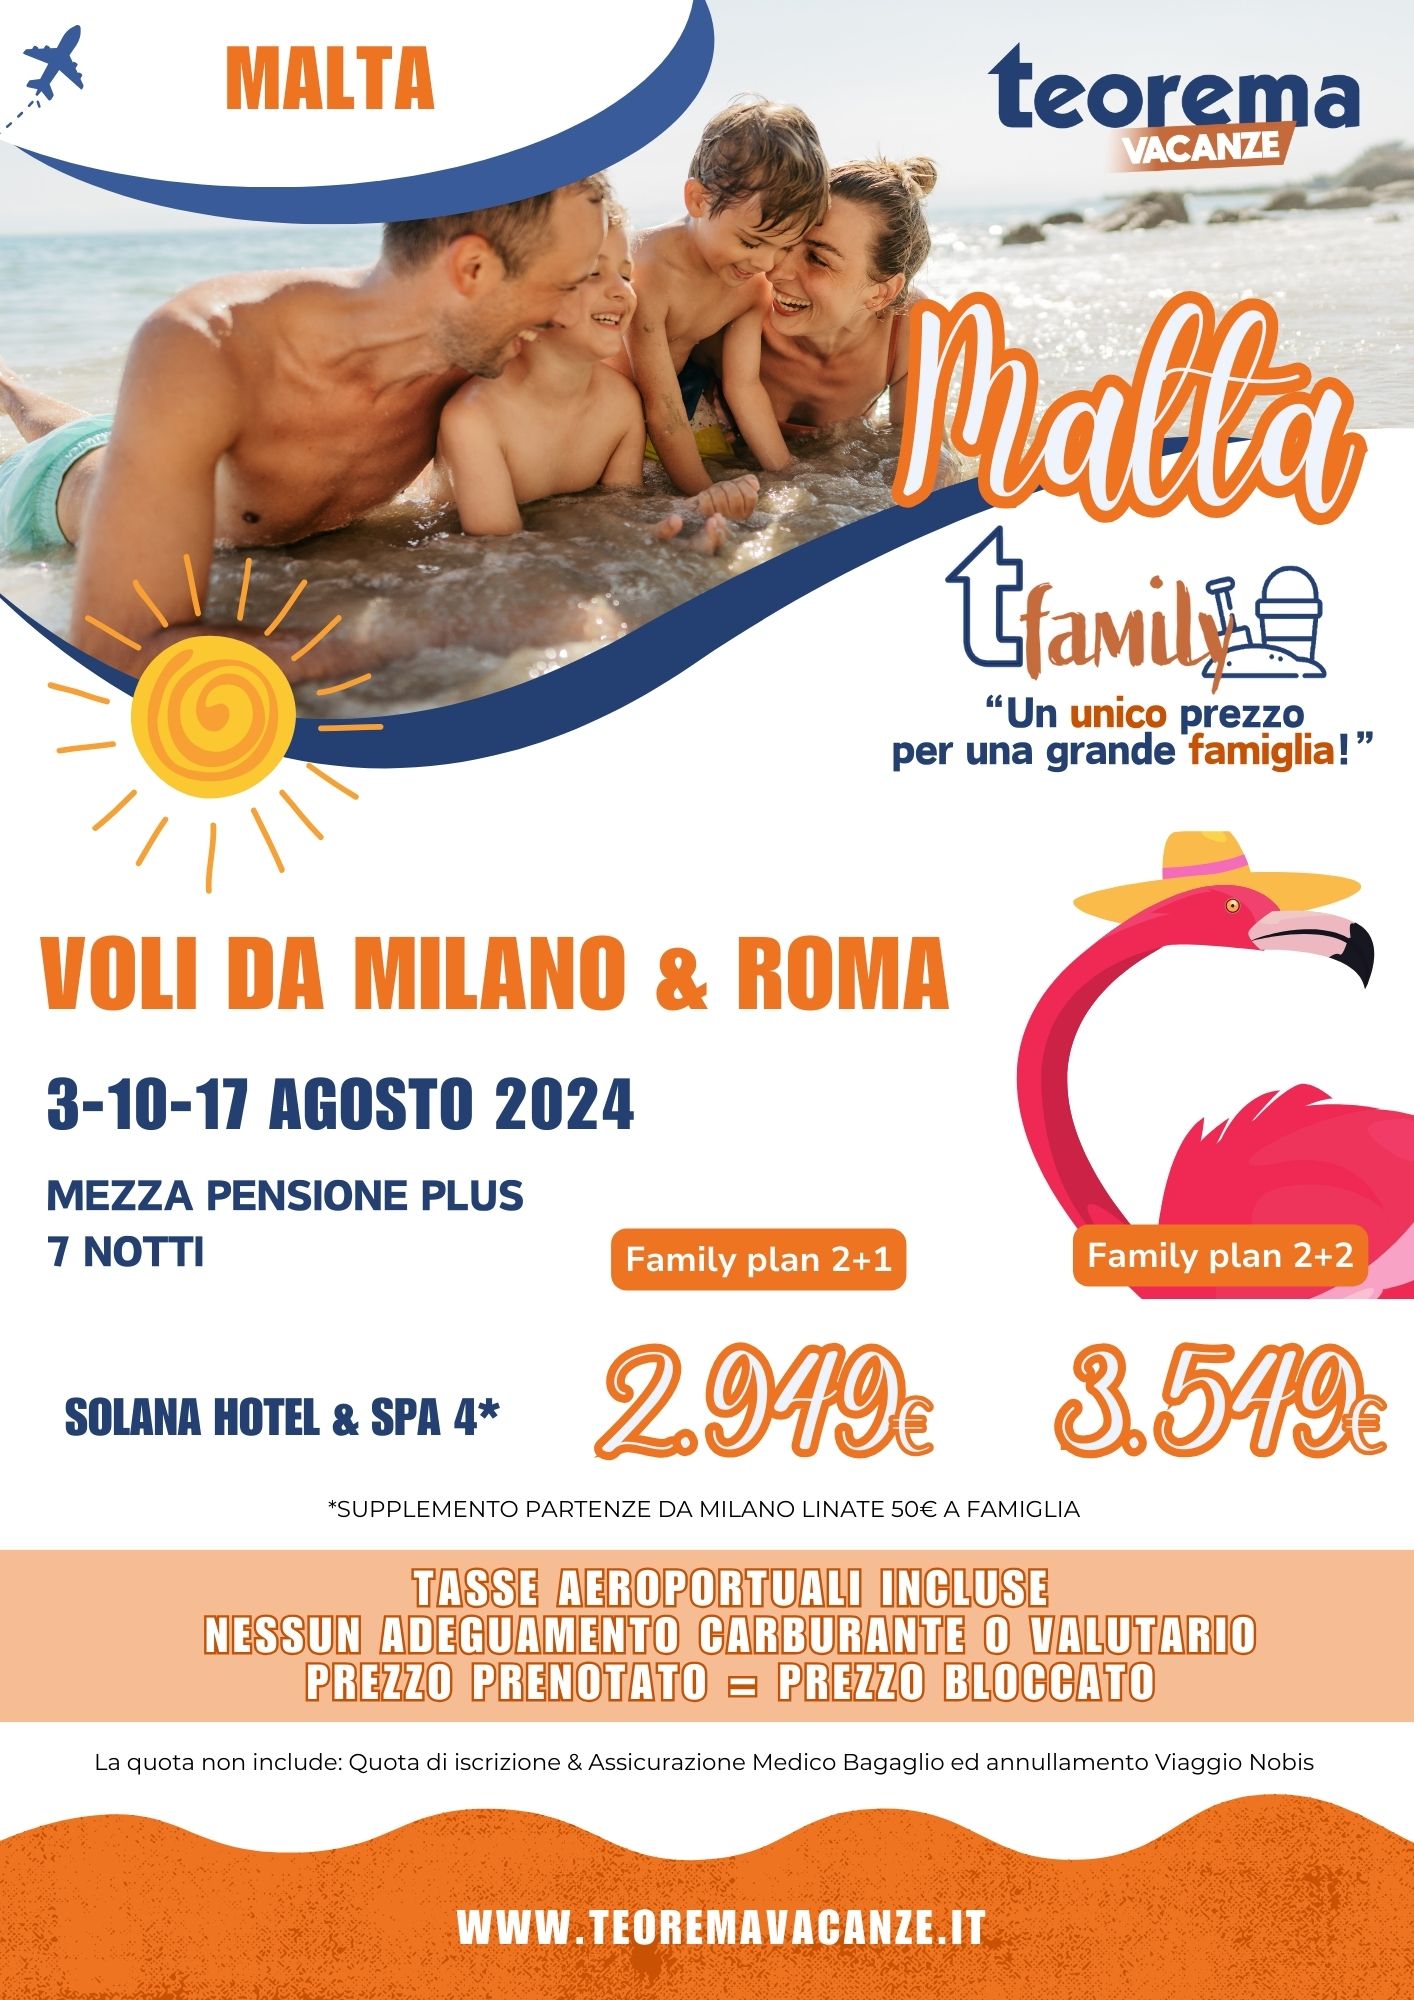 T FAMILY - MALTA - DA MILANO E ROMA *